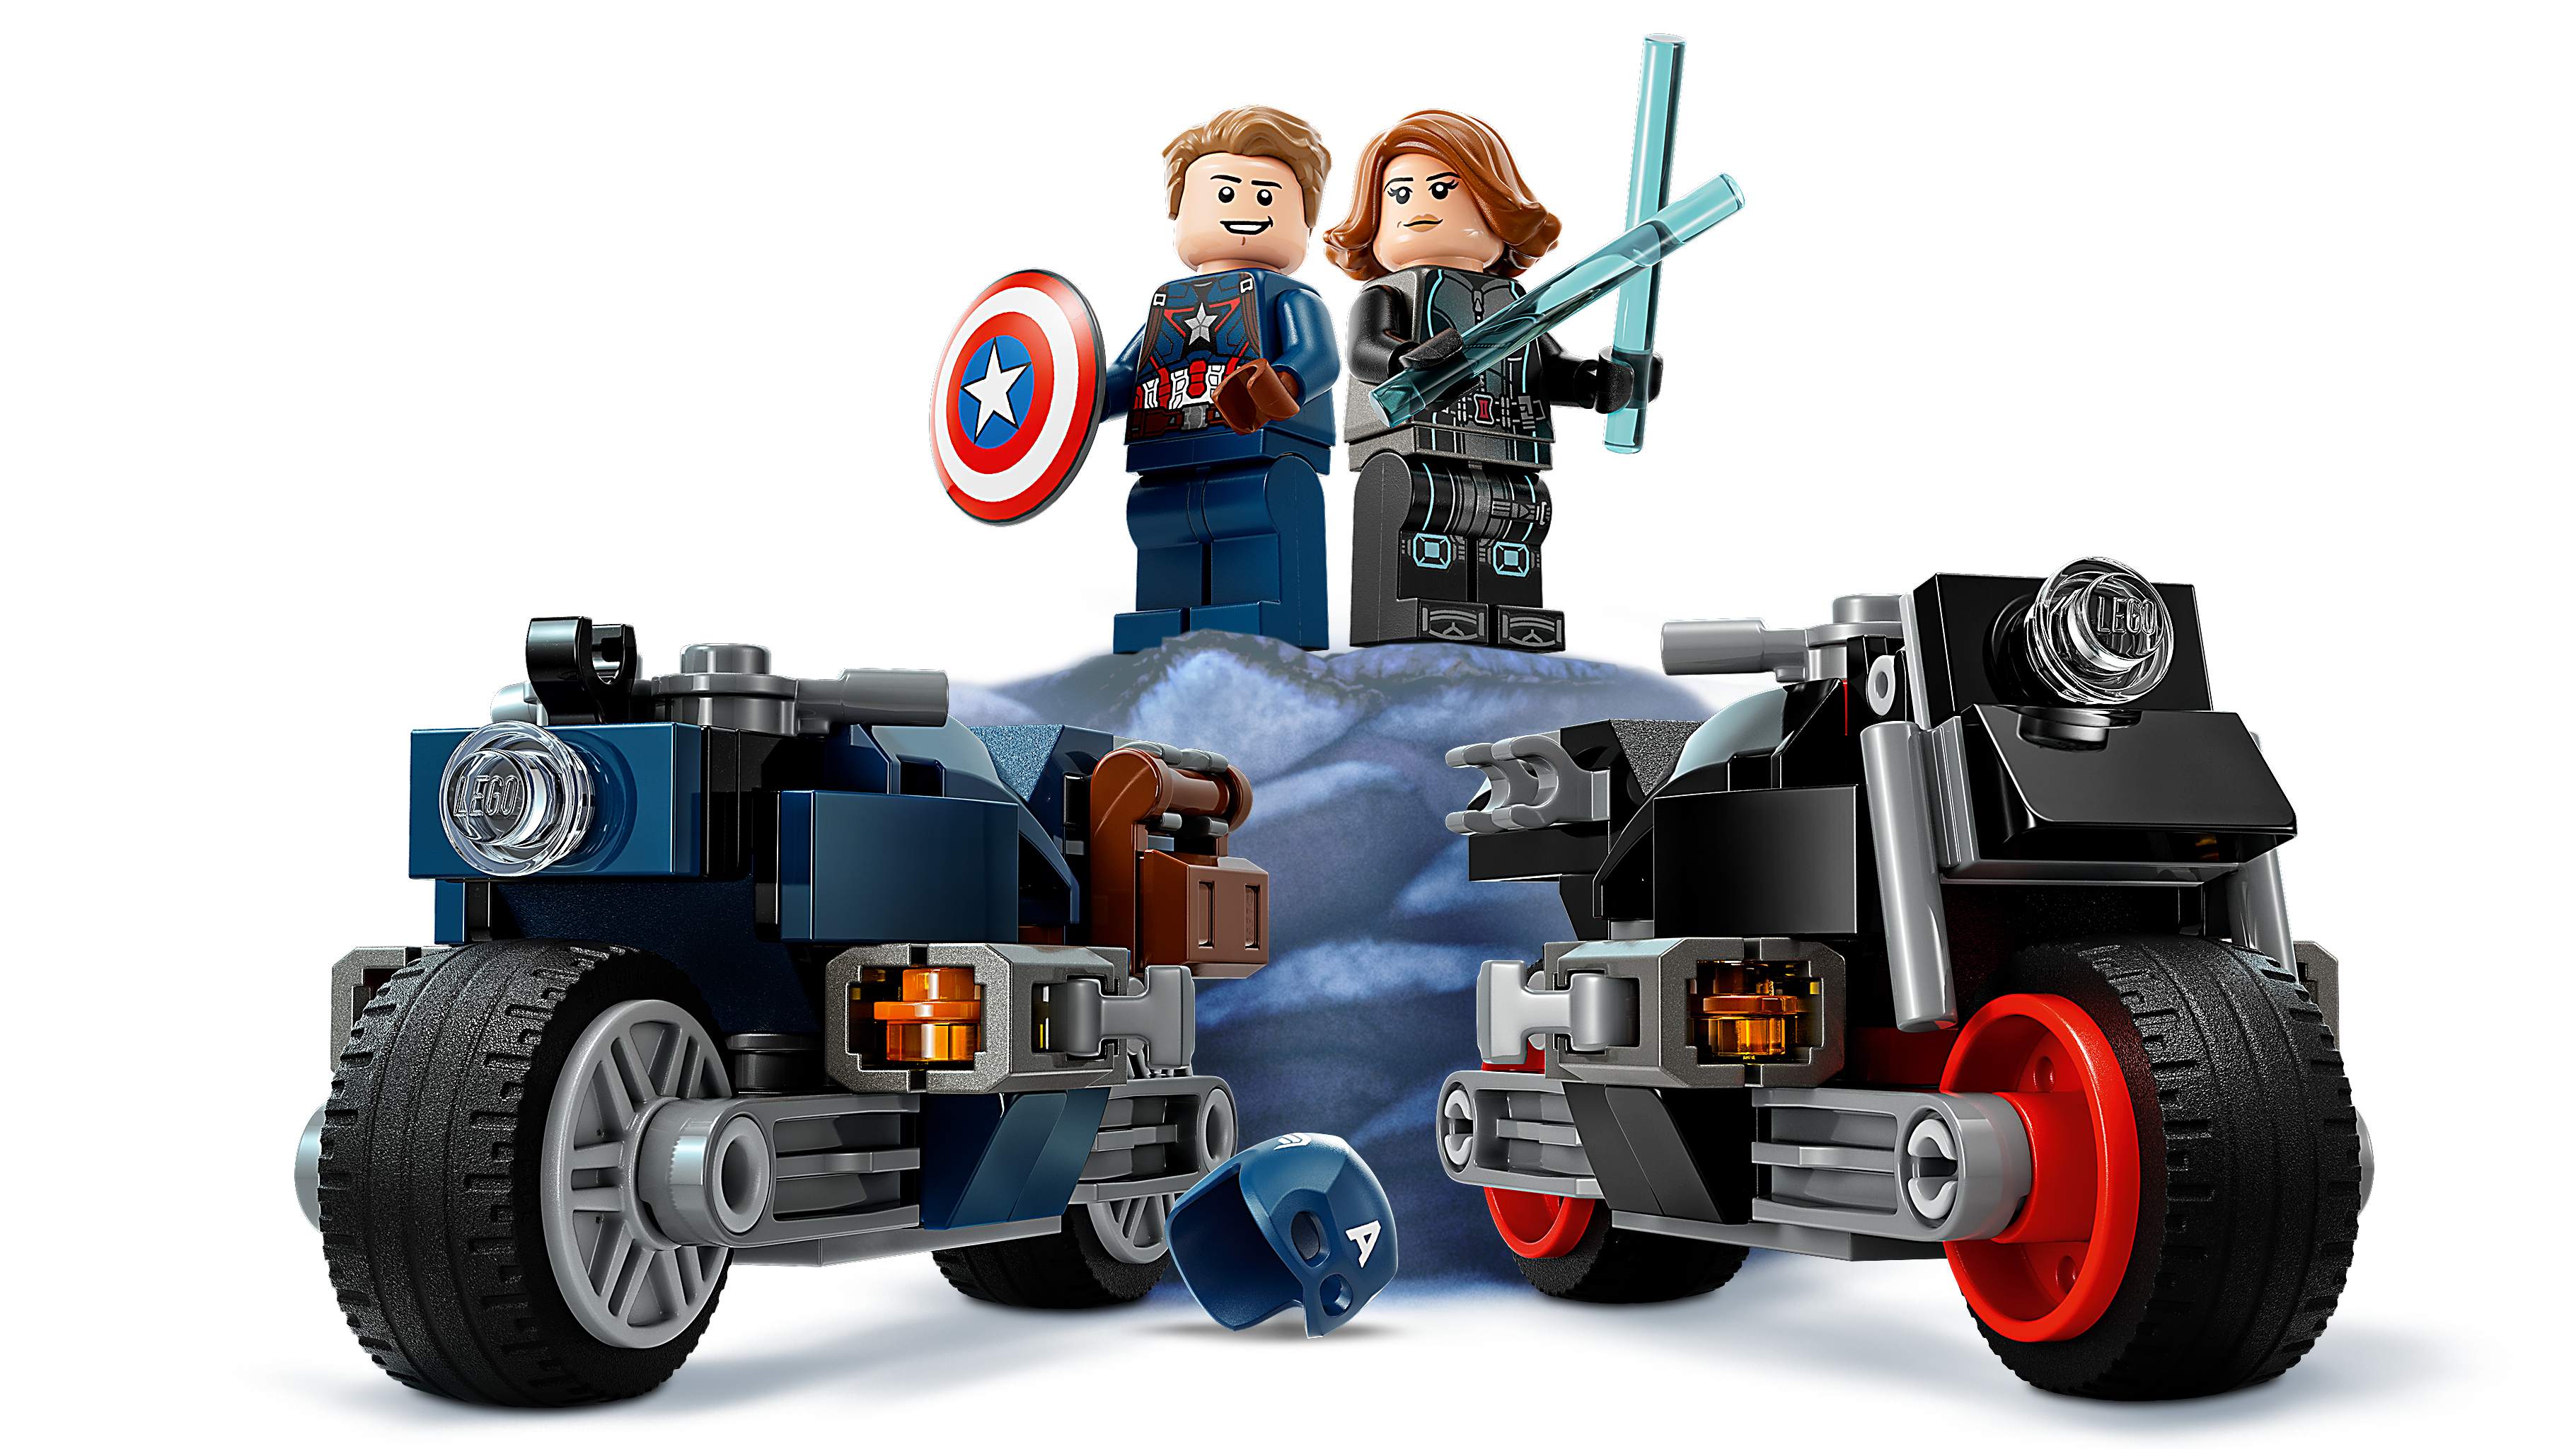 LEGO® Marvel 76260 Les Motos de Black Widow et de Captain America